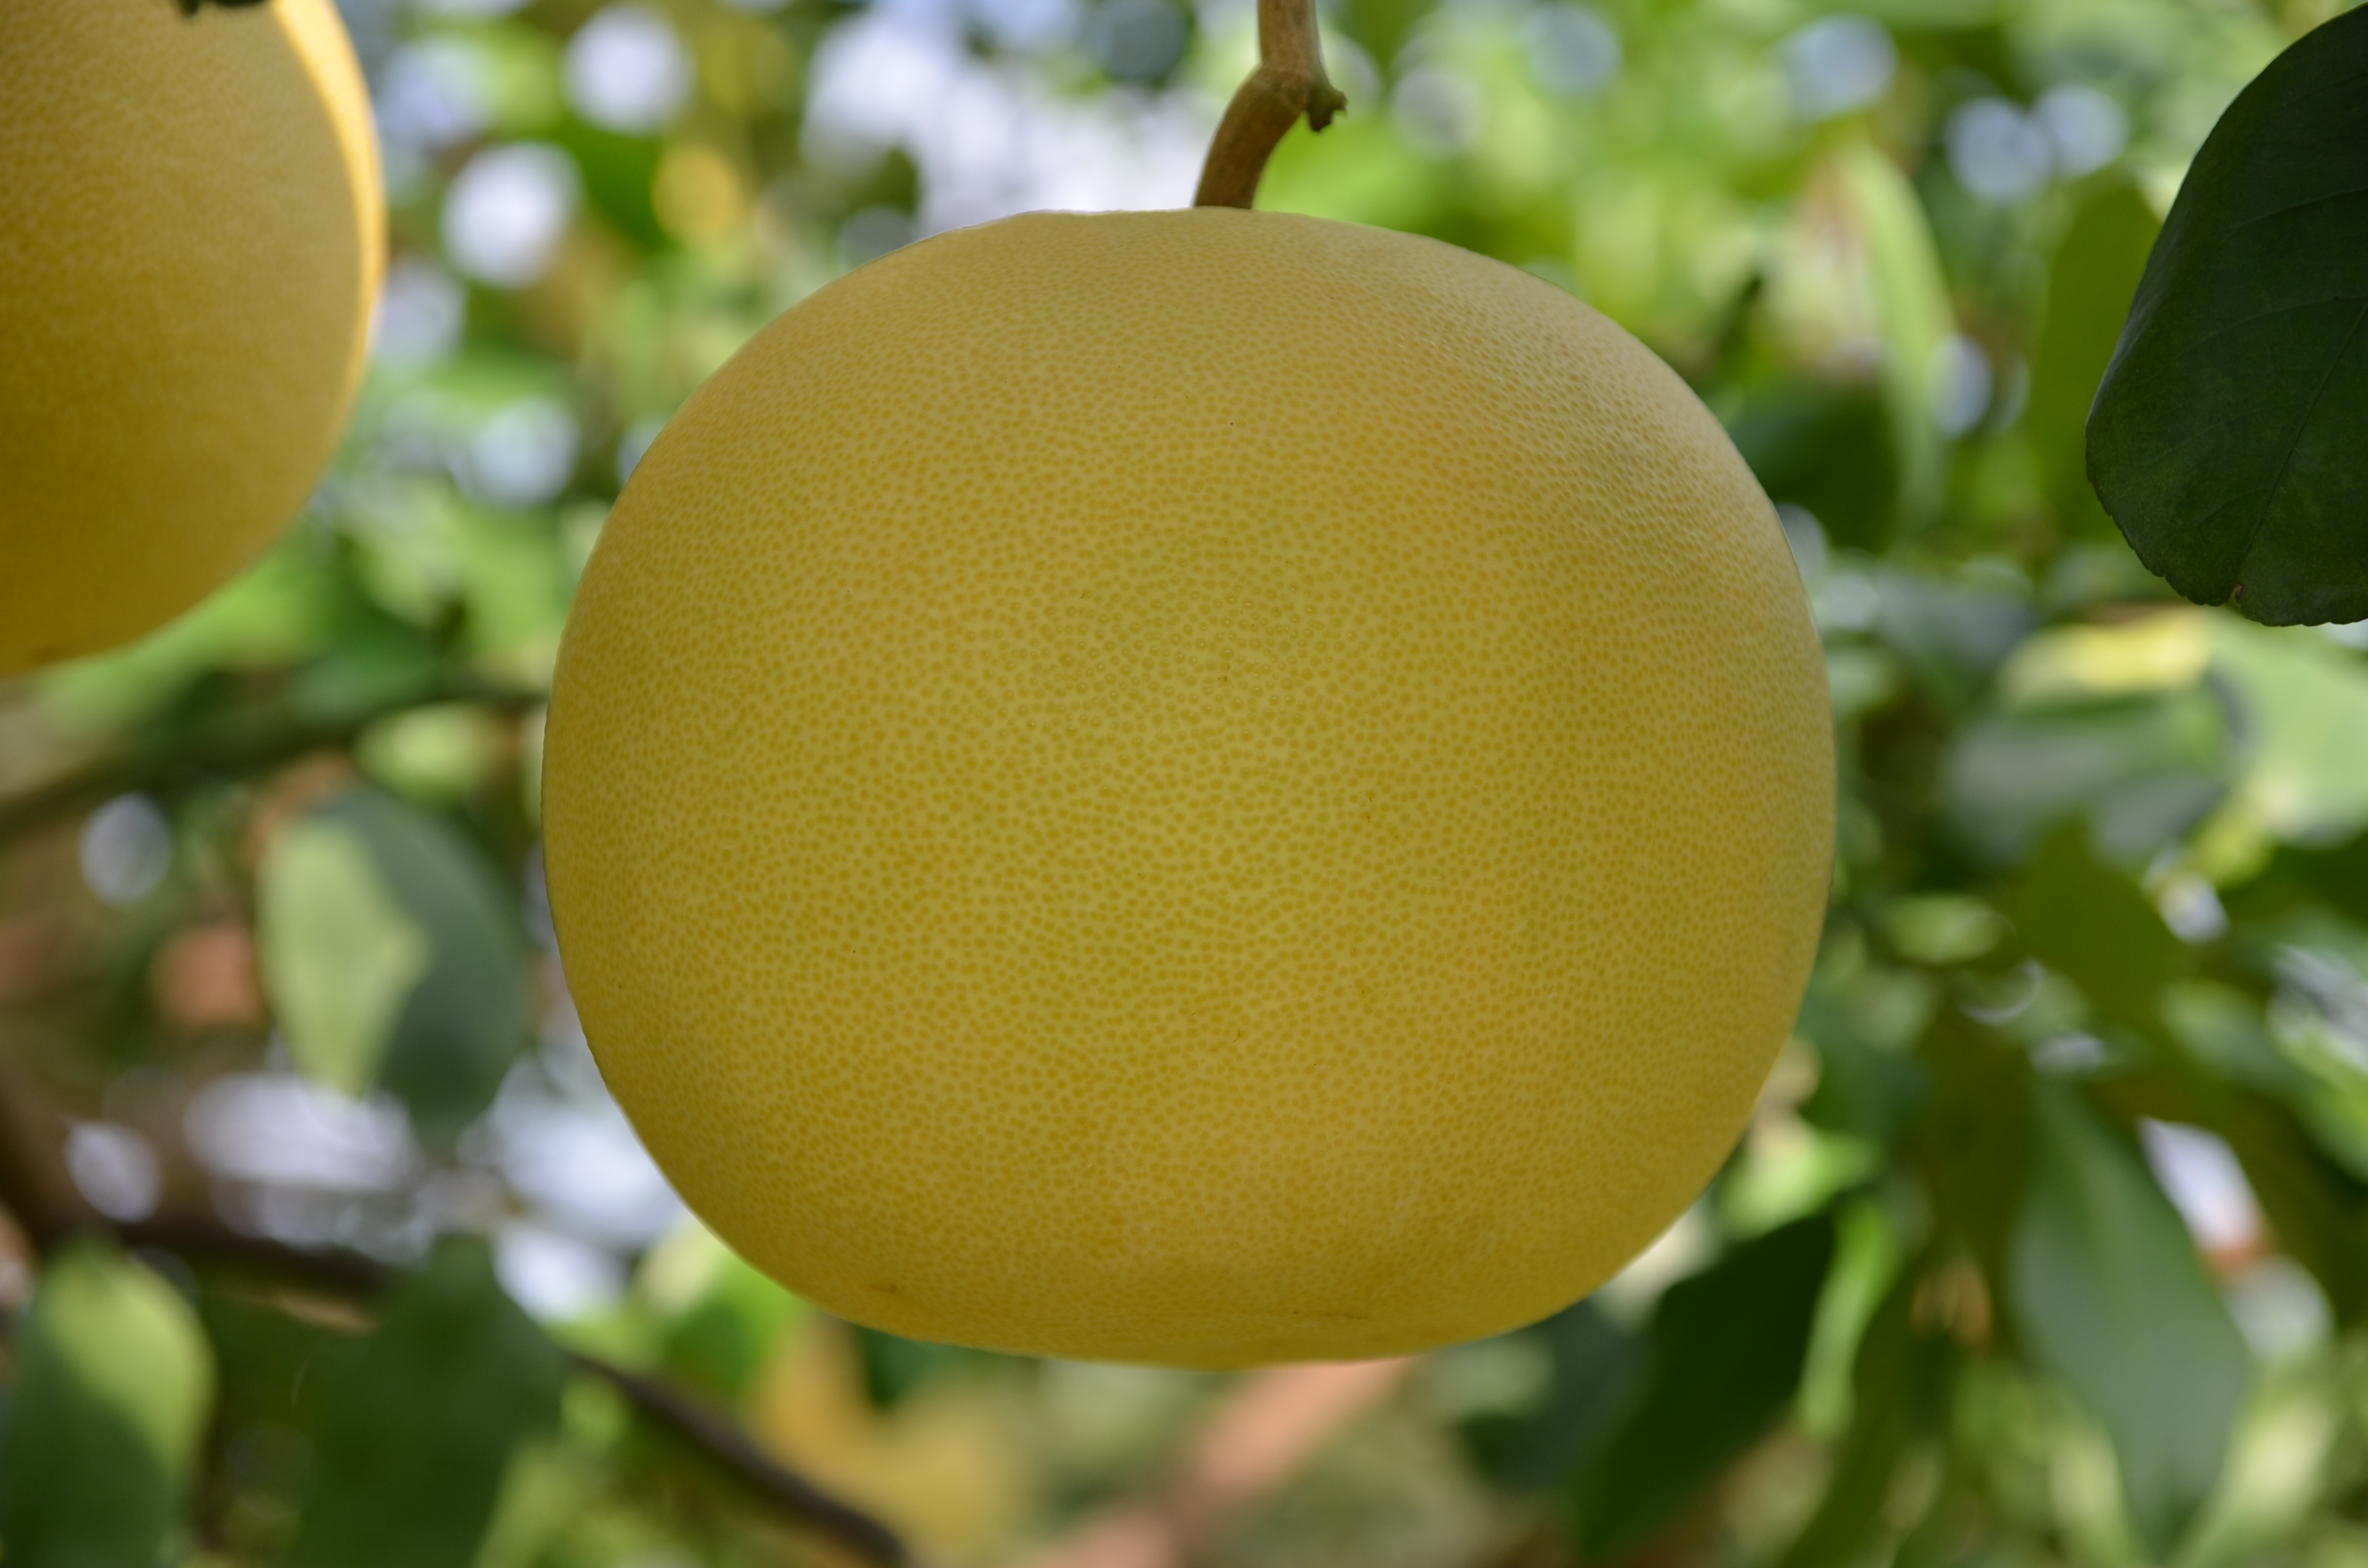 大白柚果實重量約1~2公斤左右